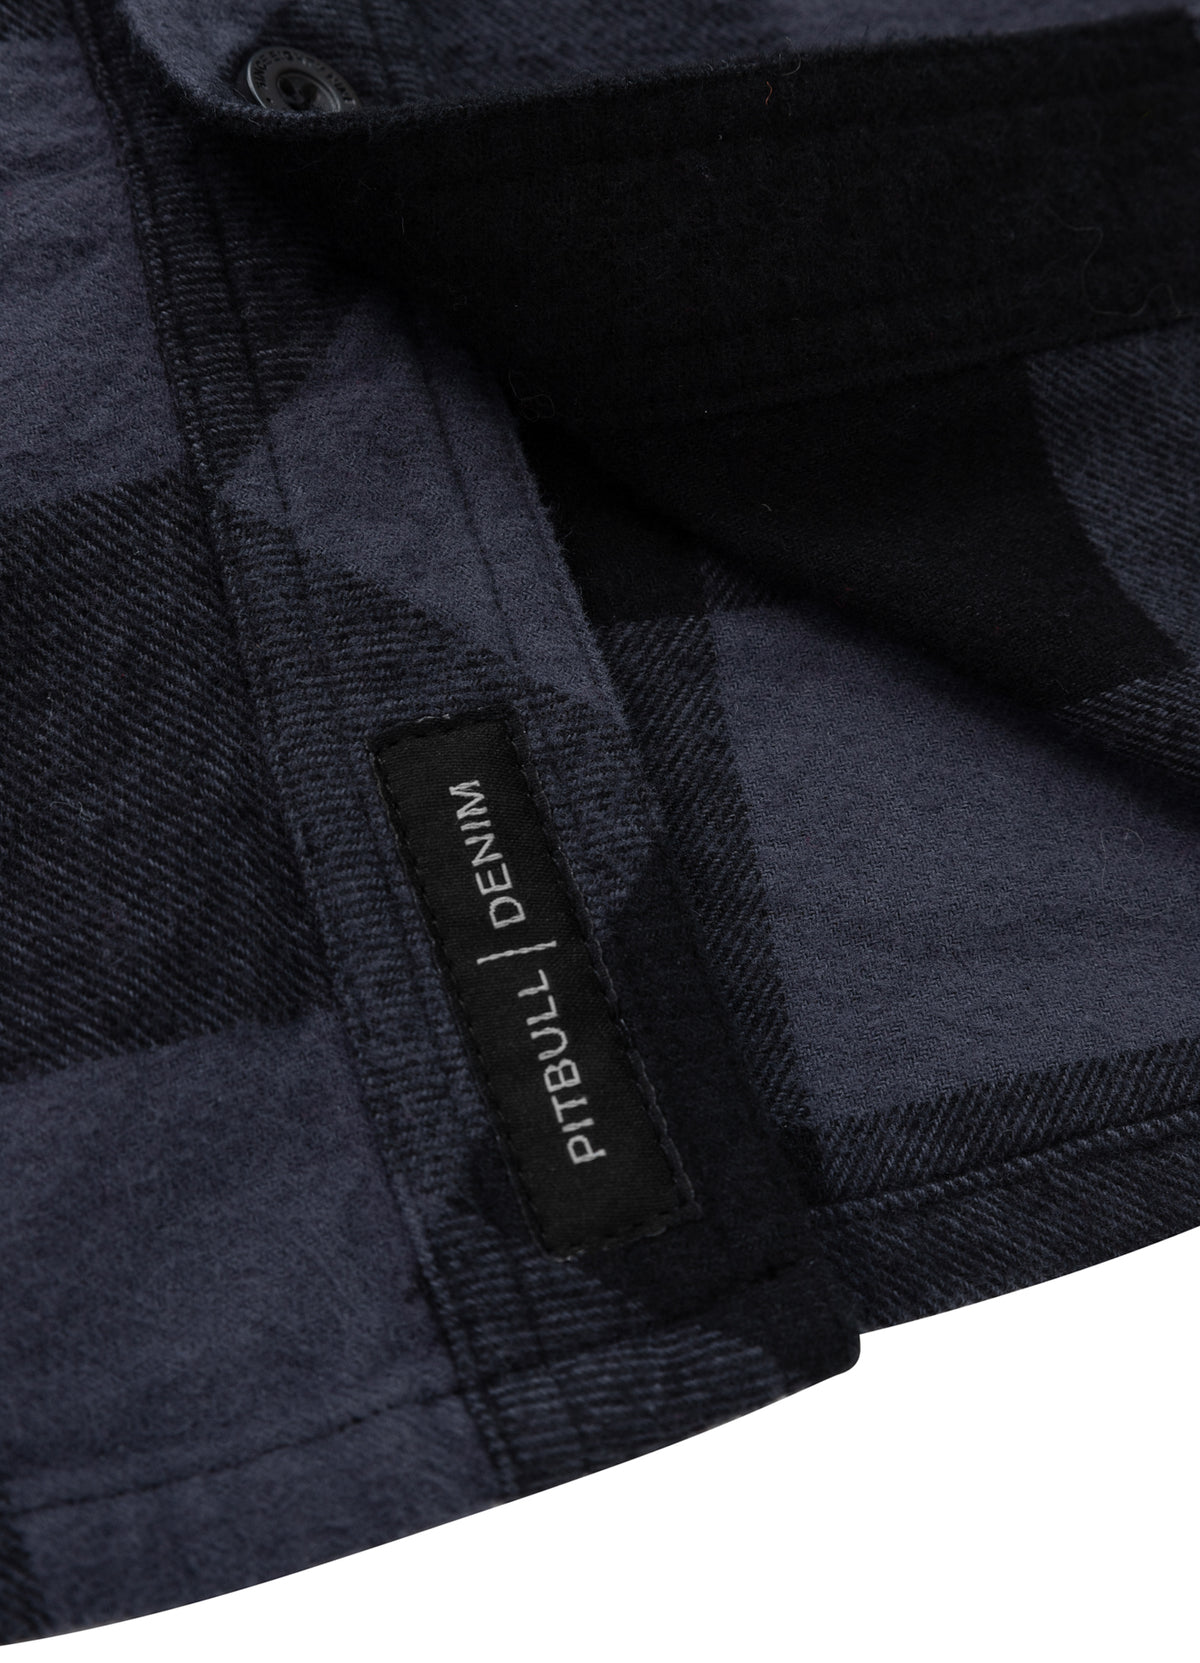 MITCHELL Grey/Black Flannel Shirt